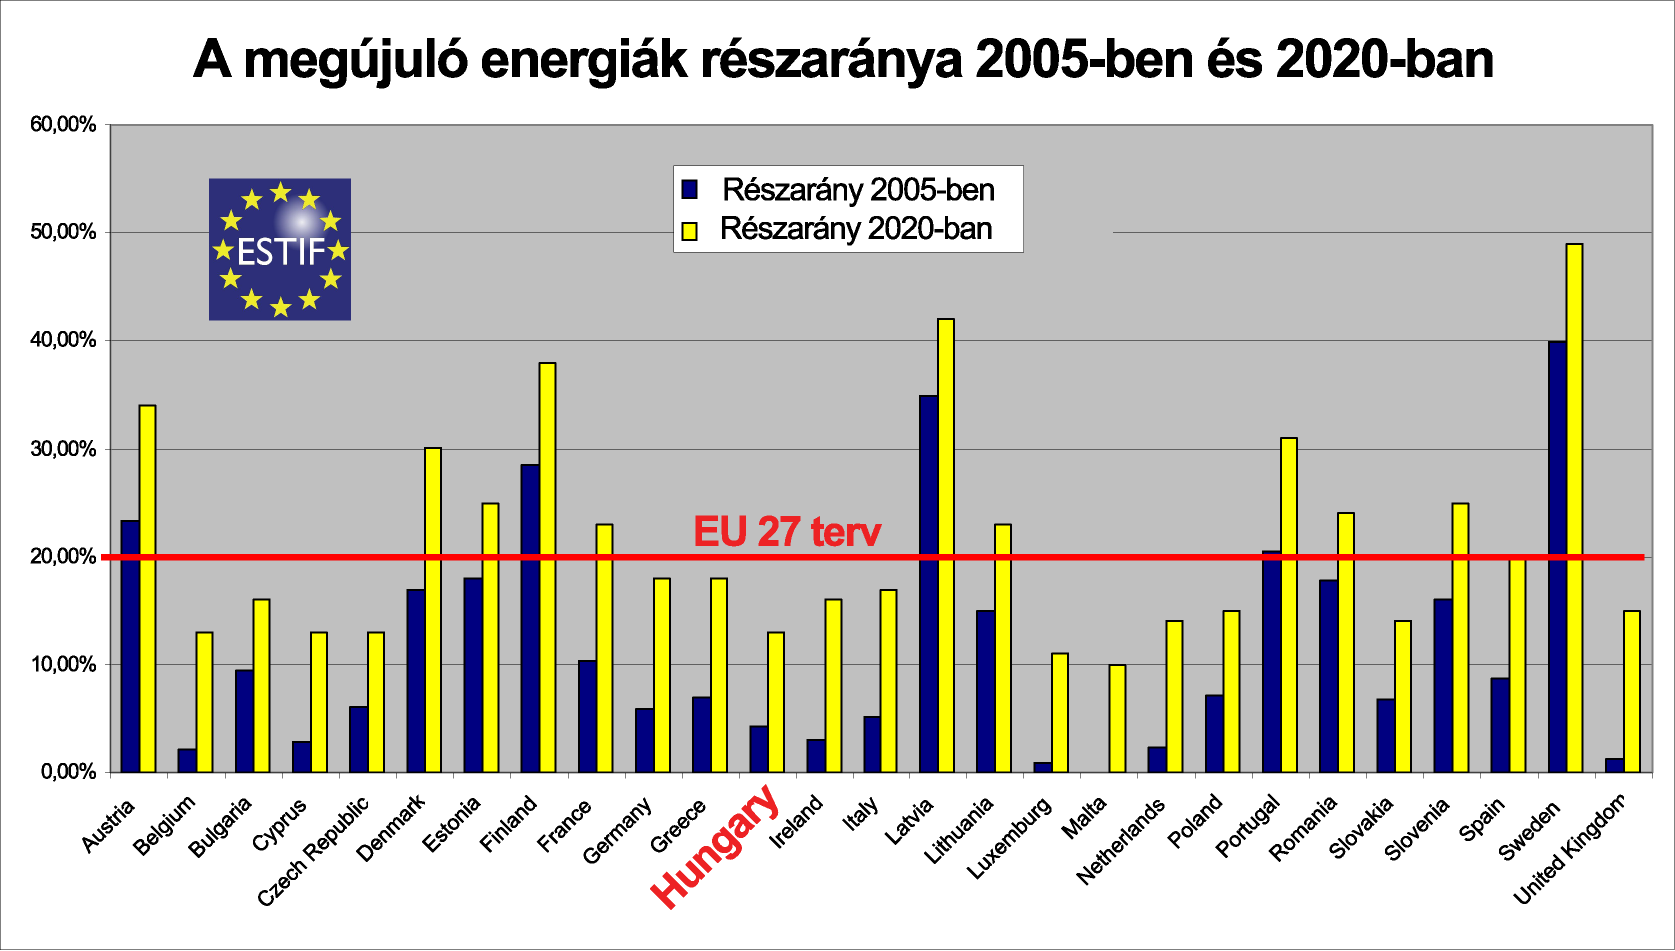 Európai Parlament és Tanács RED irányelve Magyarország számára 2020-ra: Megújulók részaránya 13% a bruttó végső